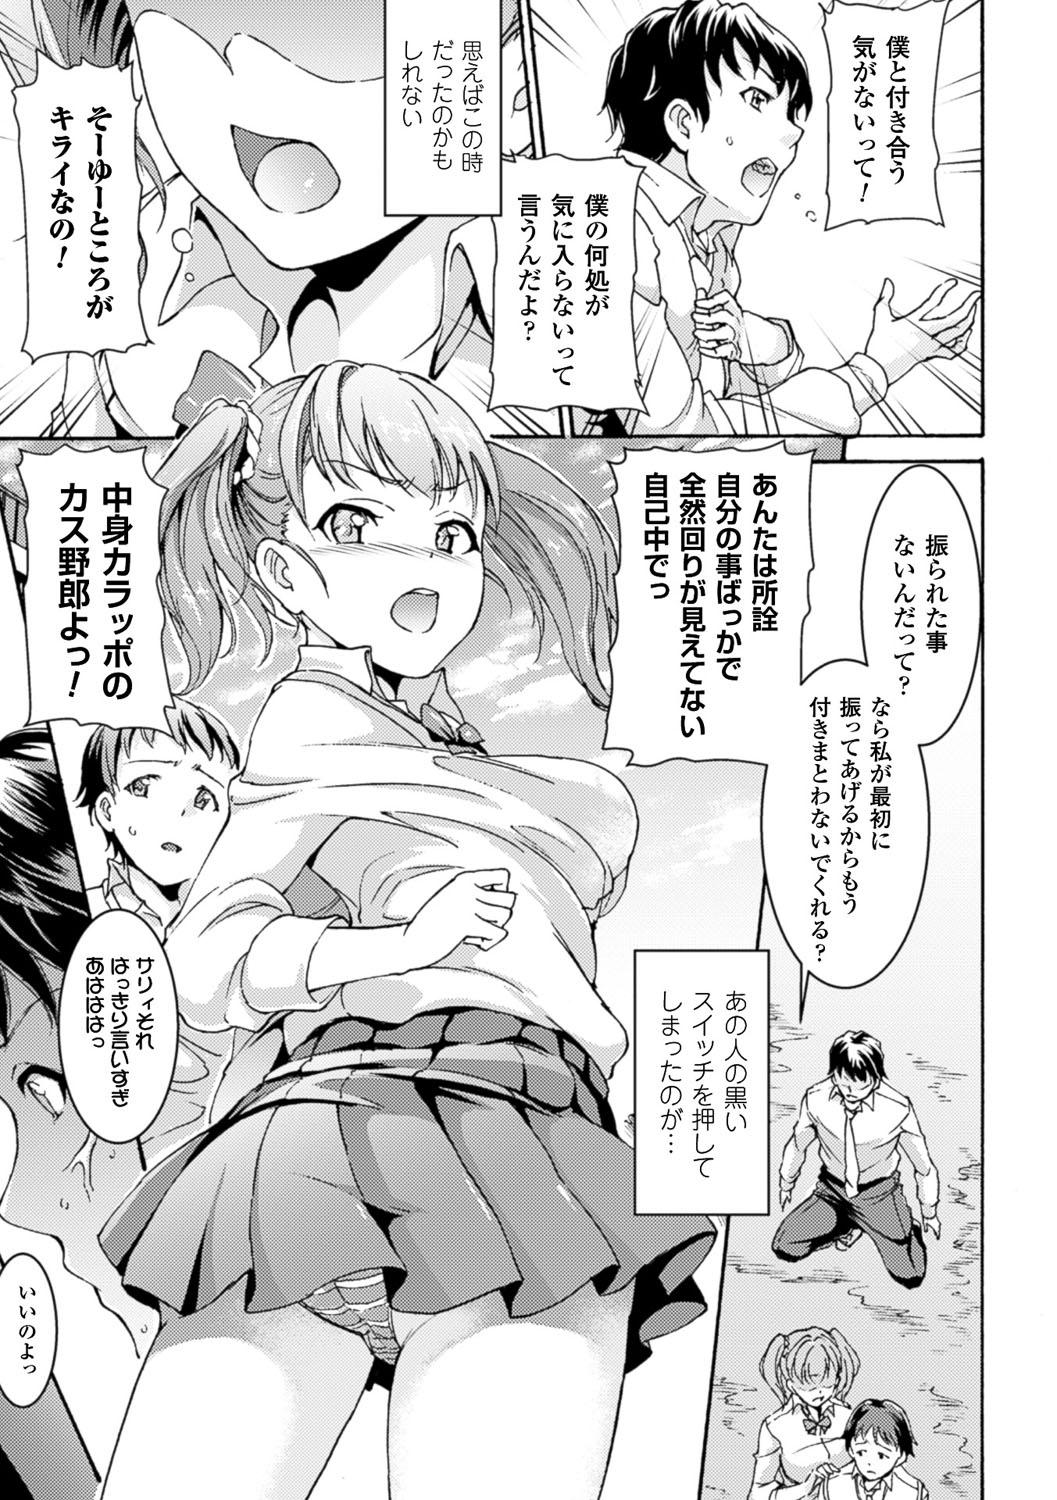 Bessatsu Comic Unreal Ijimekko ni Fushigi na Chikara de Fukushuu Hen Digital Ban Vol. 2 63